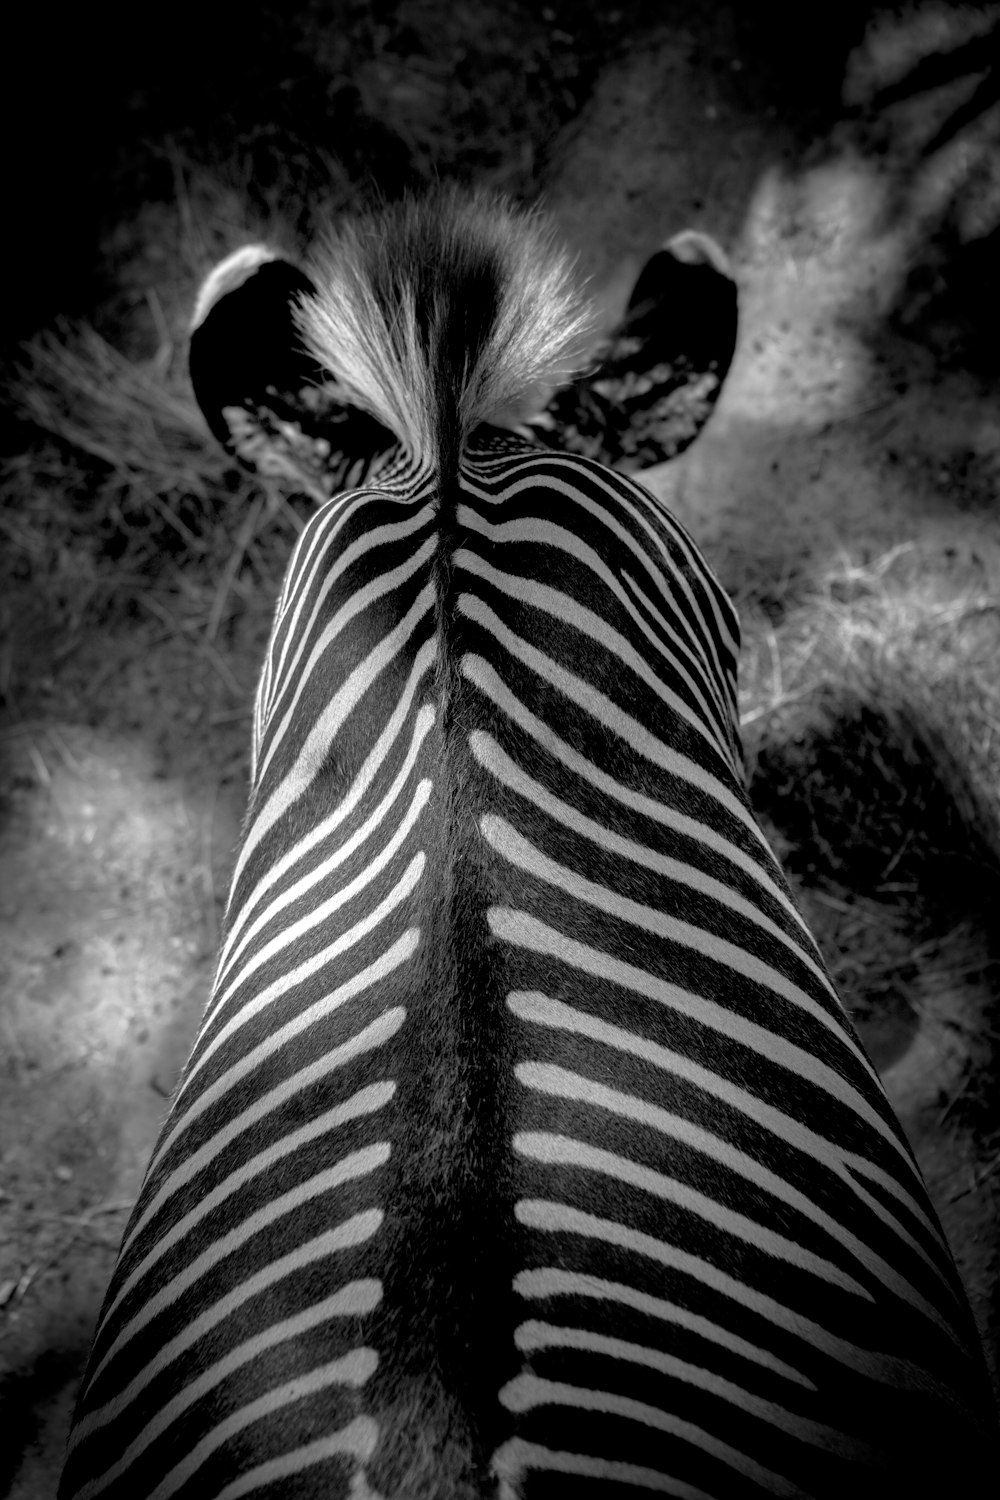 Animale zebrato in bianco e nero rivolto all'indietro